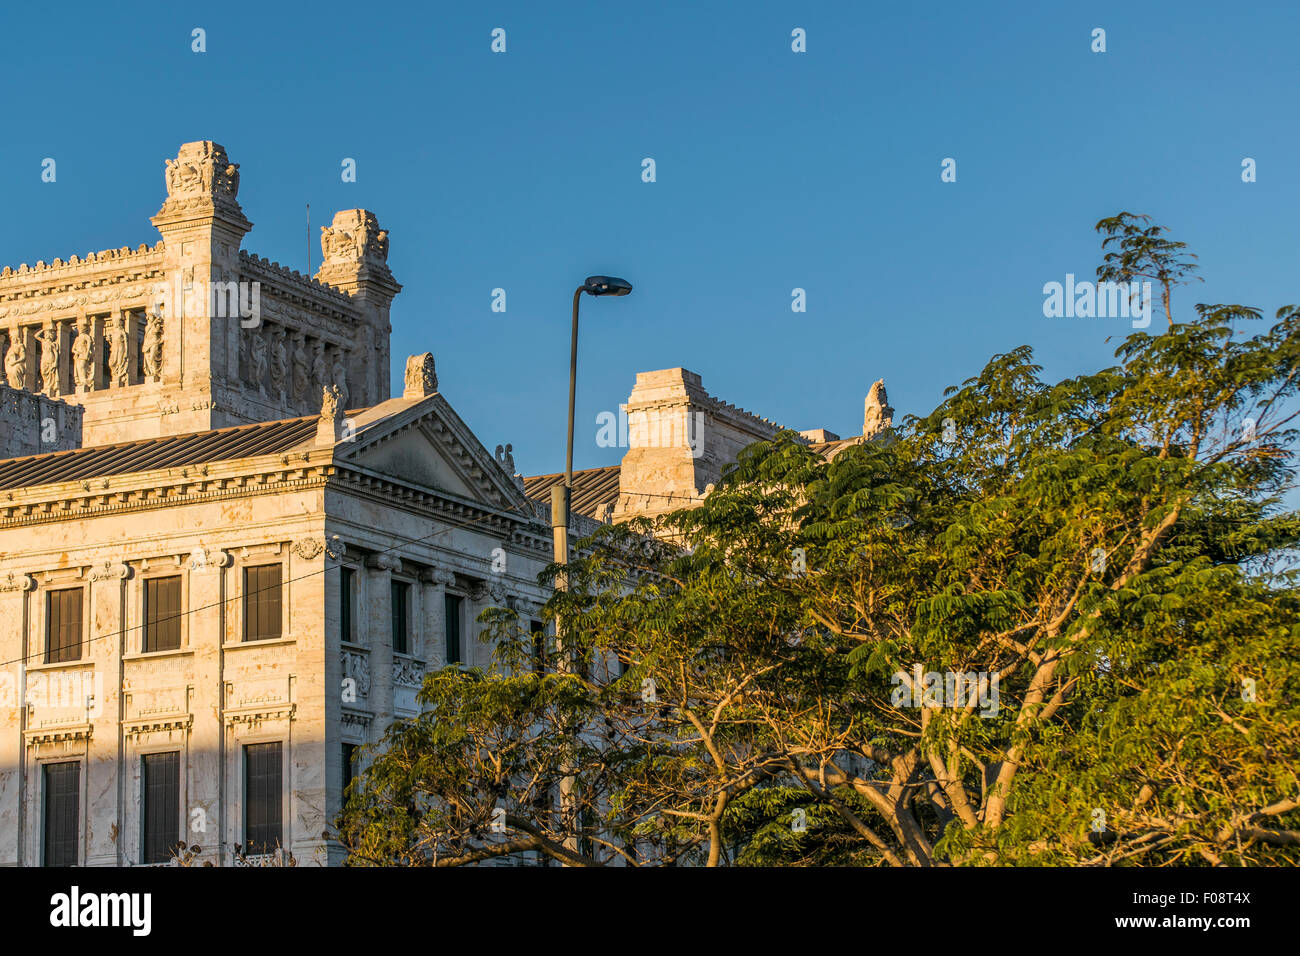 Low angle view of côté supérieur de style néoclassique monument palais législatif de l'Uruguay, situé dans la capitale Montevideo Banque D'Images